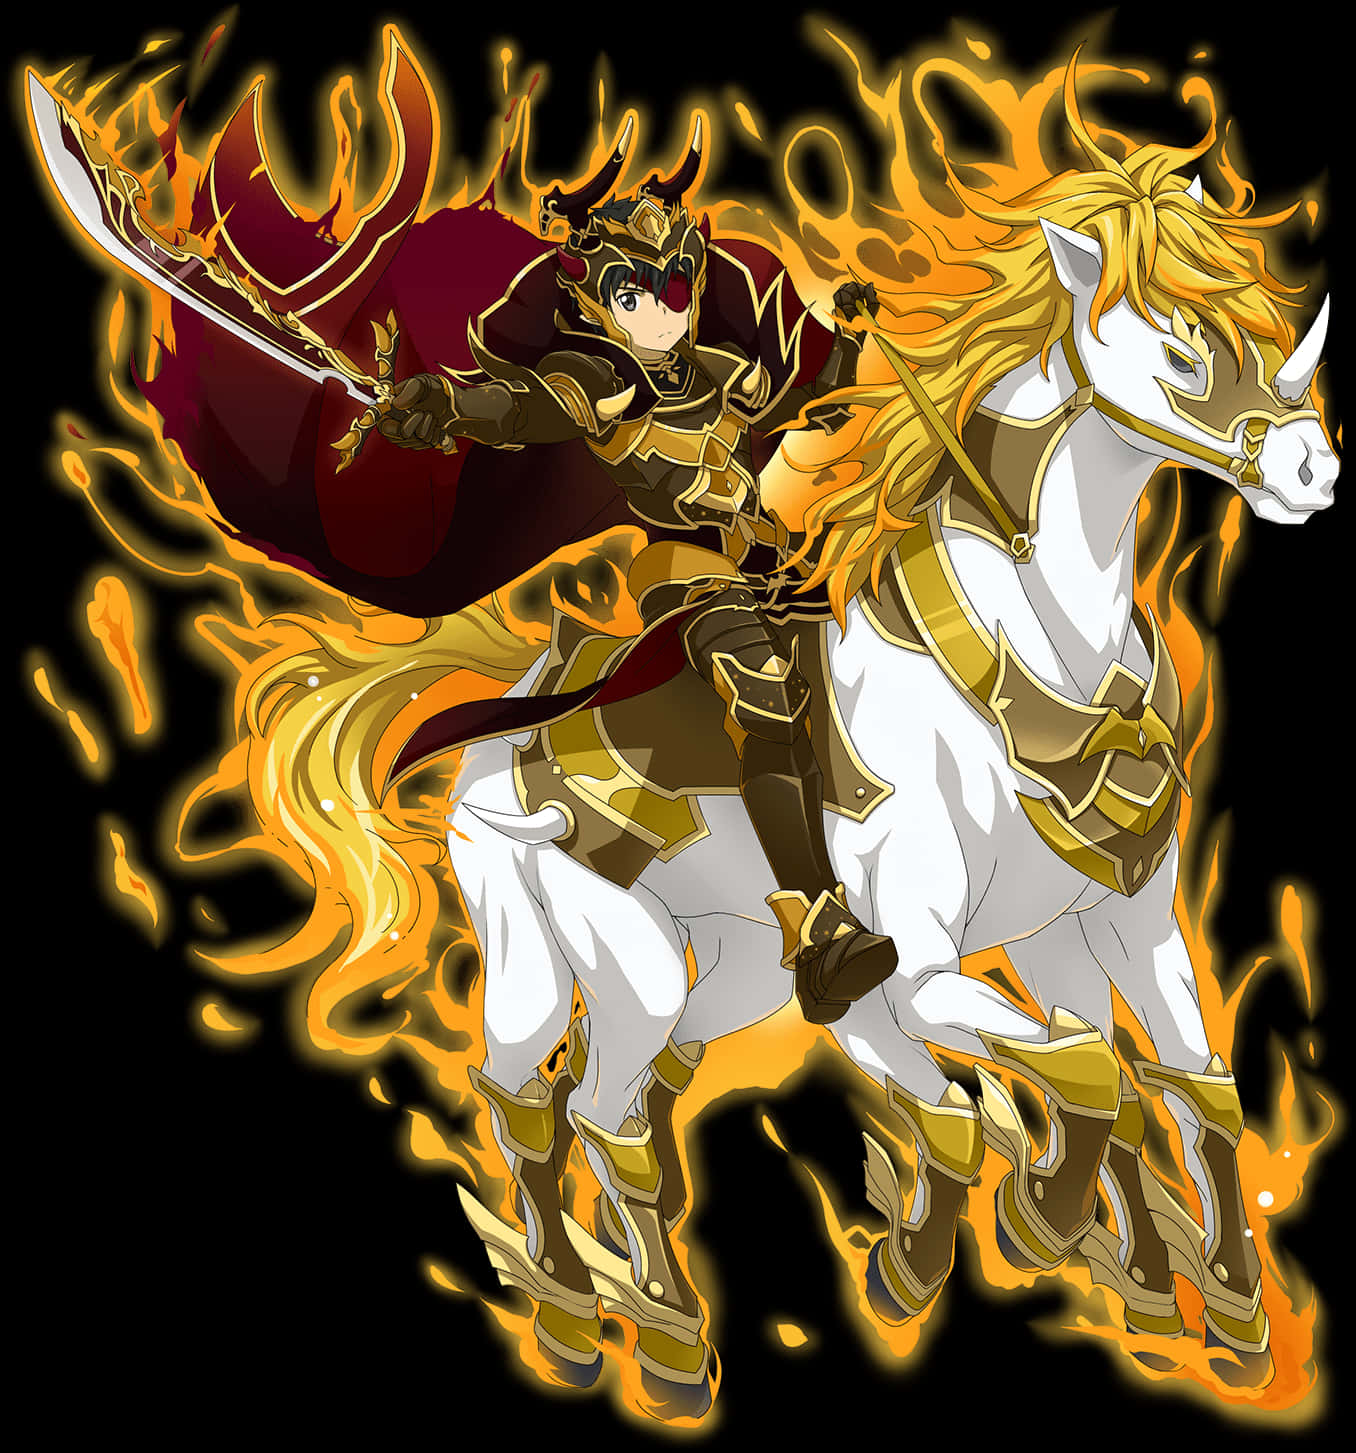 Flaming Knight Rider Artwork